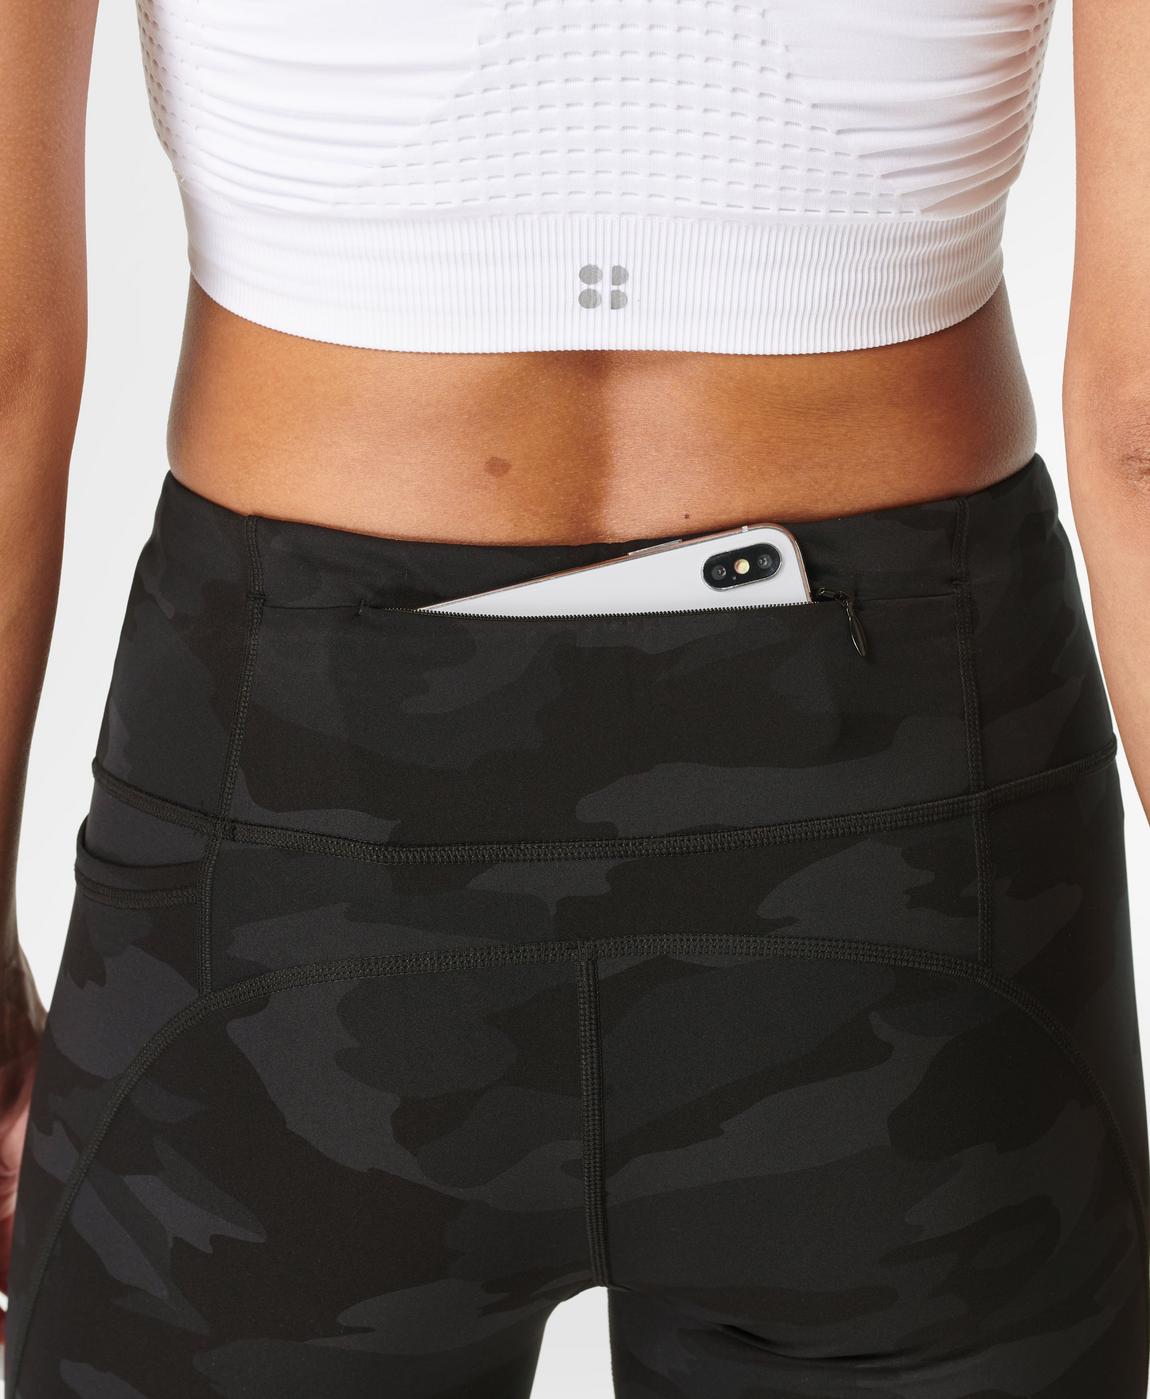 Sweaty Betty Power Crop Workout Leggings, Black Tonal Camo Print, XS :  : Fashion